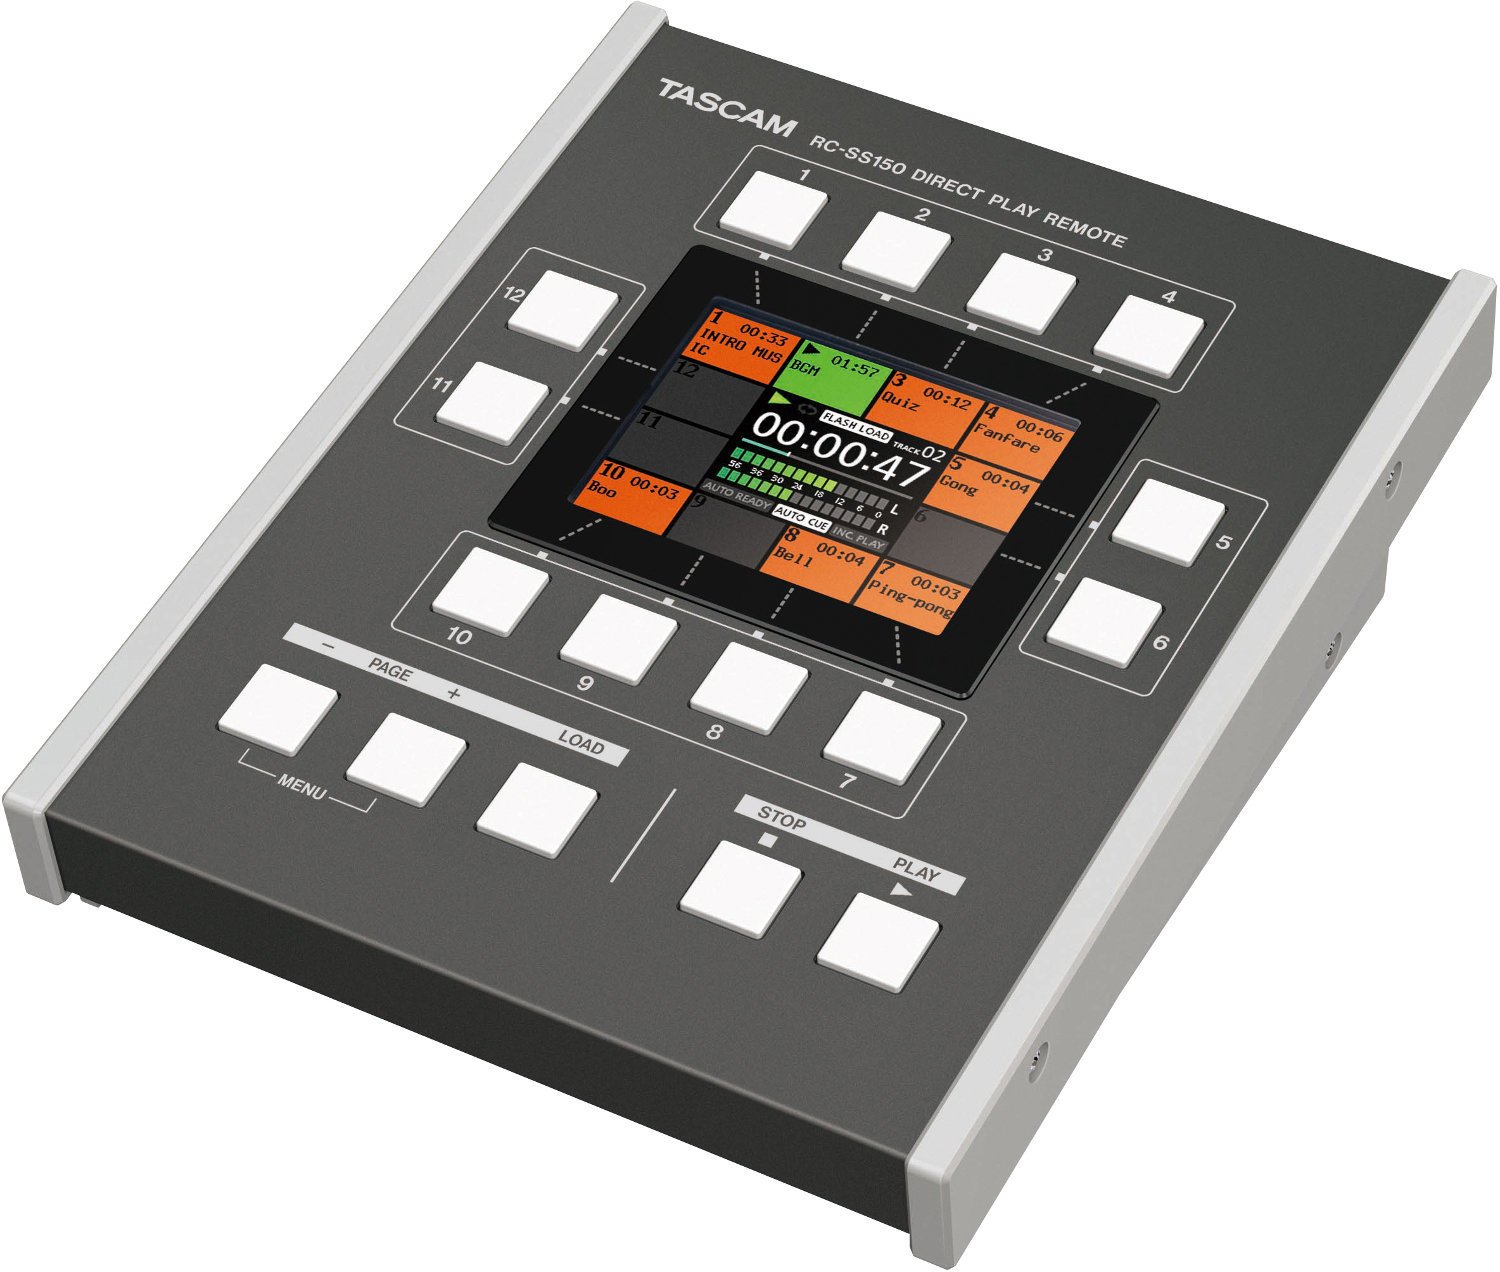 Afstandsbediening voor digitale recorders Tascam RC-SS150 Remote control